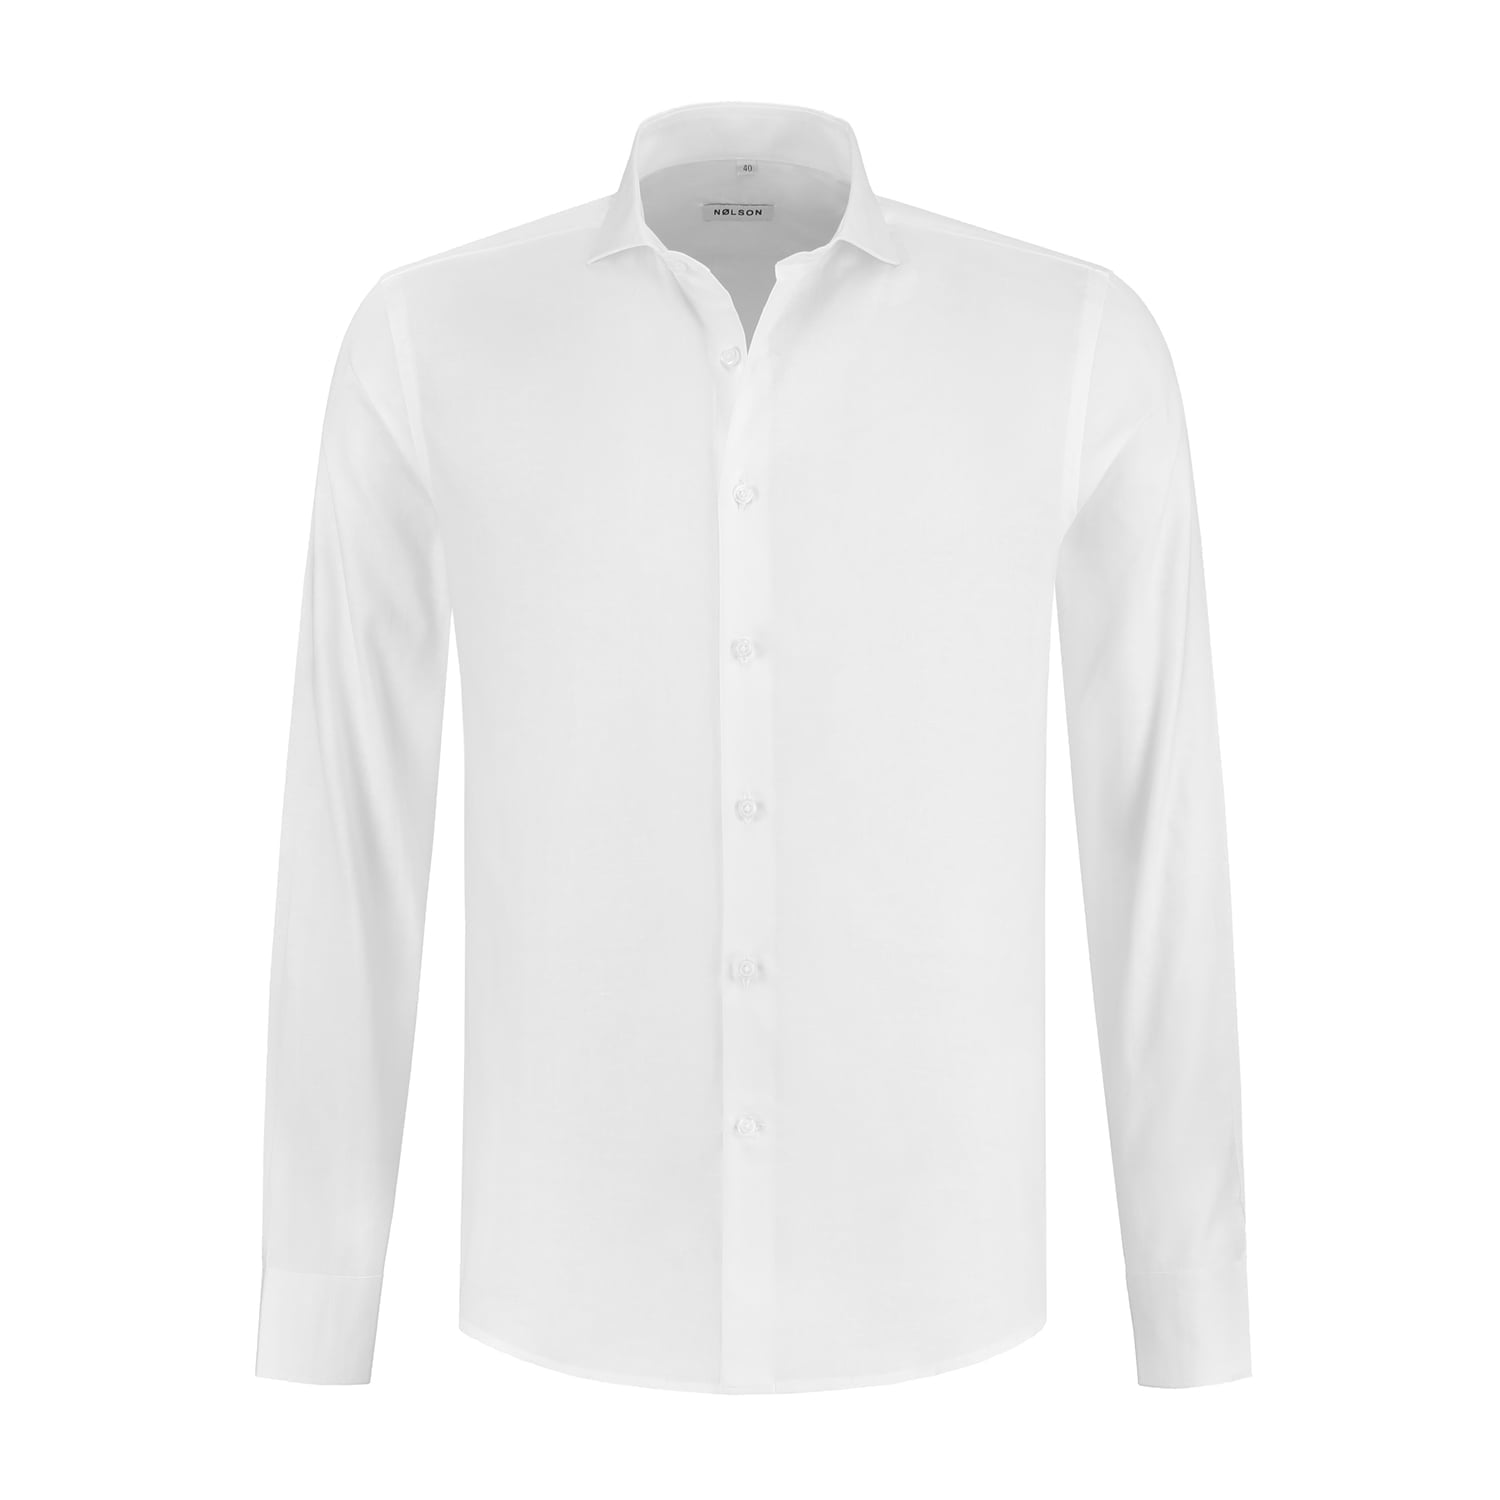 White linen shirt men